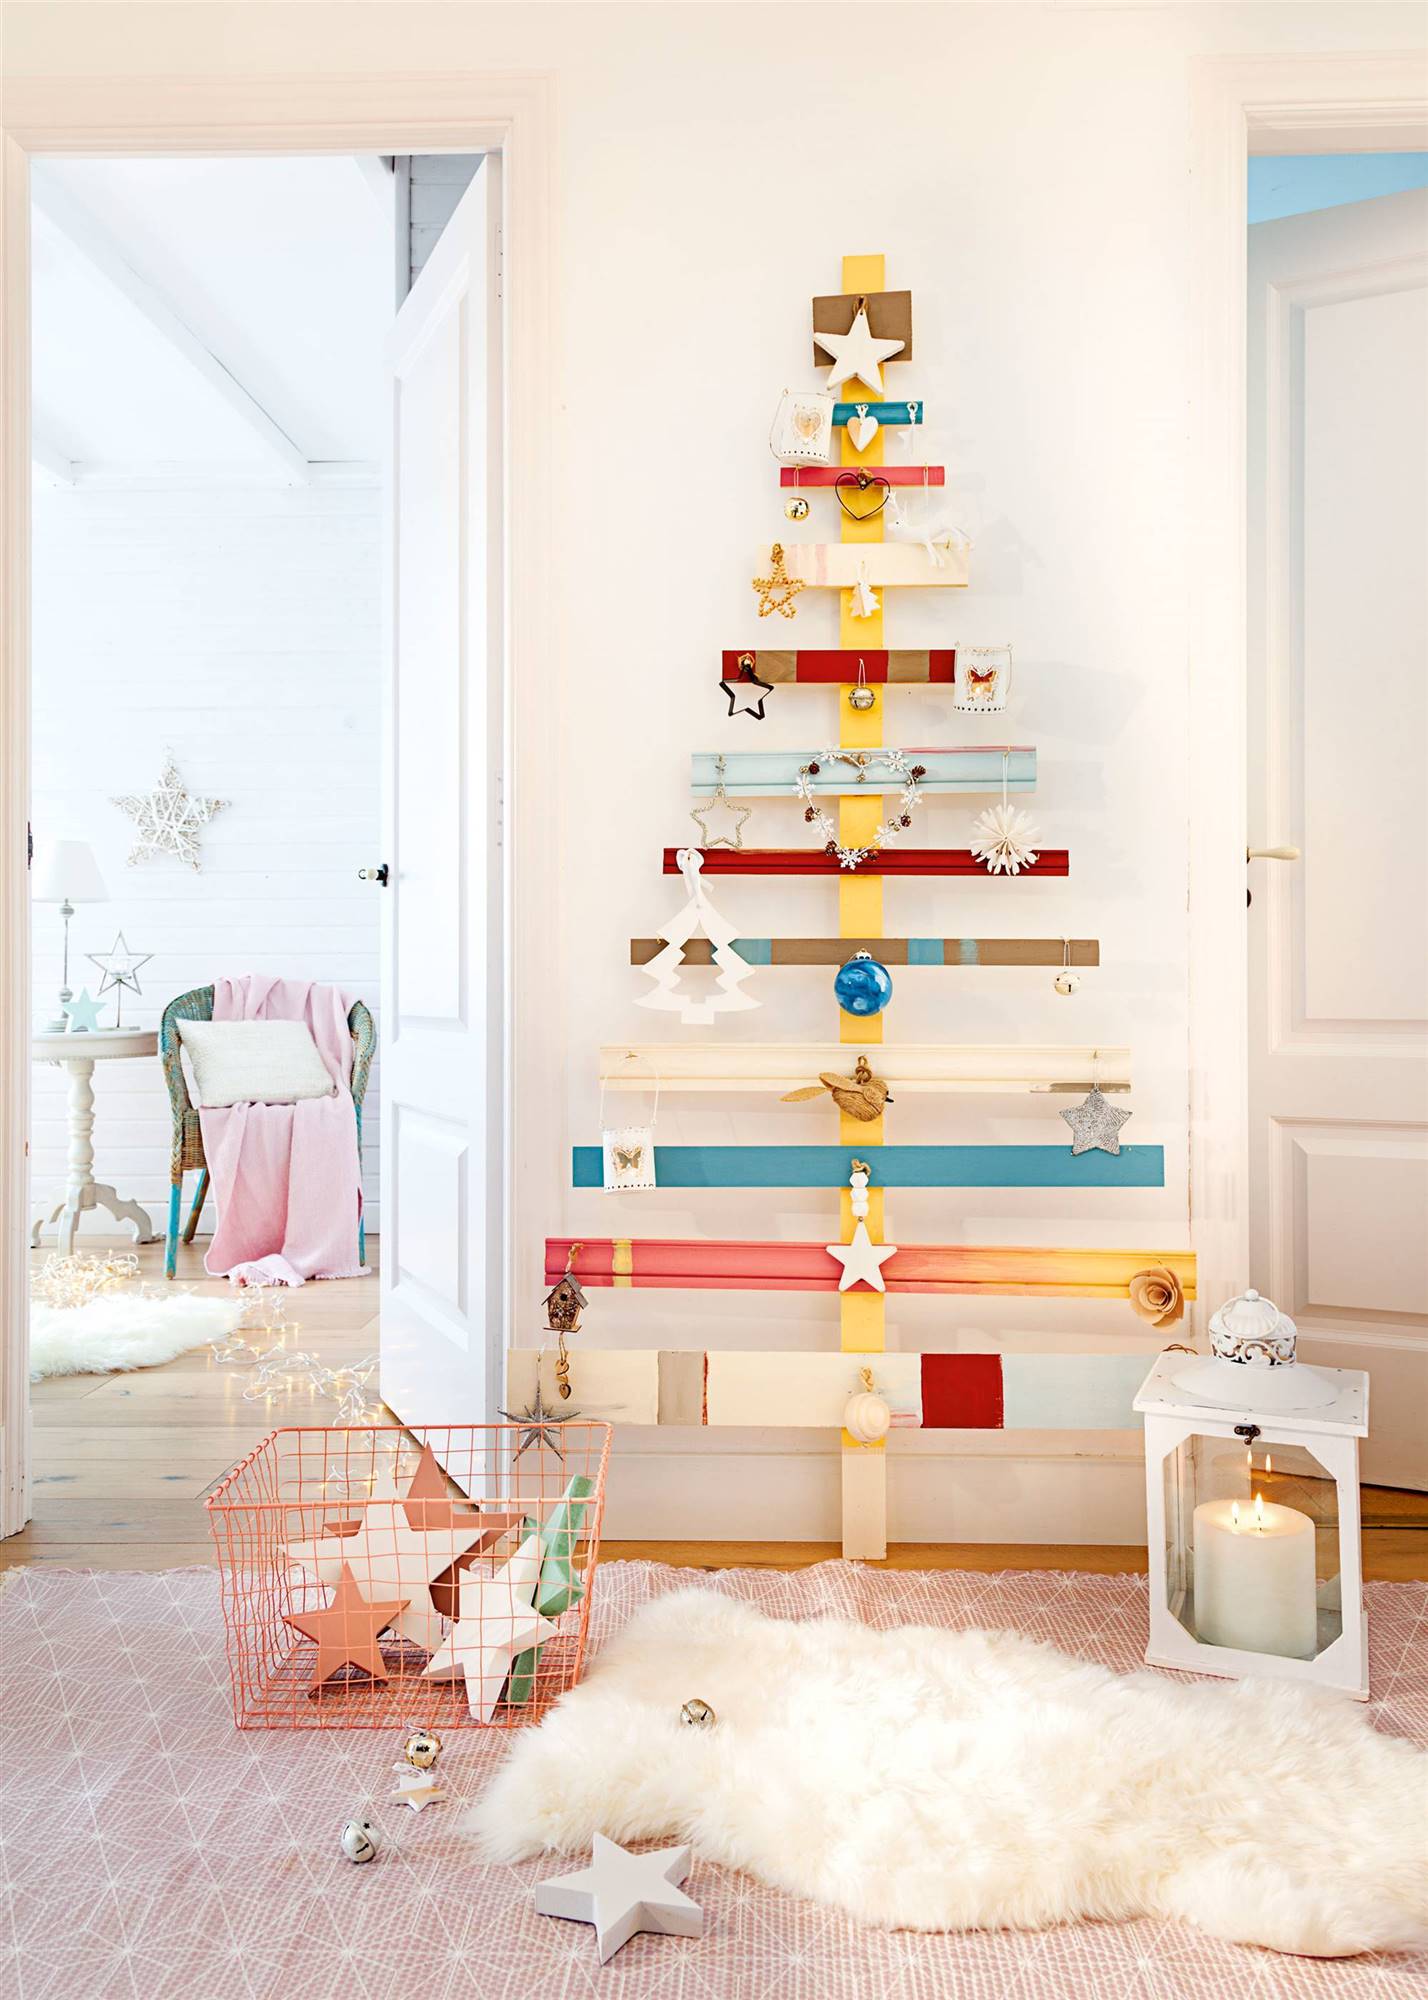 Kicode Árbol de Navidad Creativo Caja de madera de madera de Navidad Calendario Casa Tabla de Sobremesa regalos La decoración decoración del ornamento 